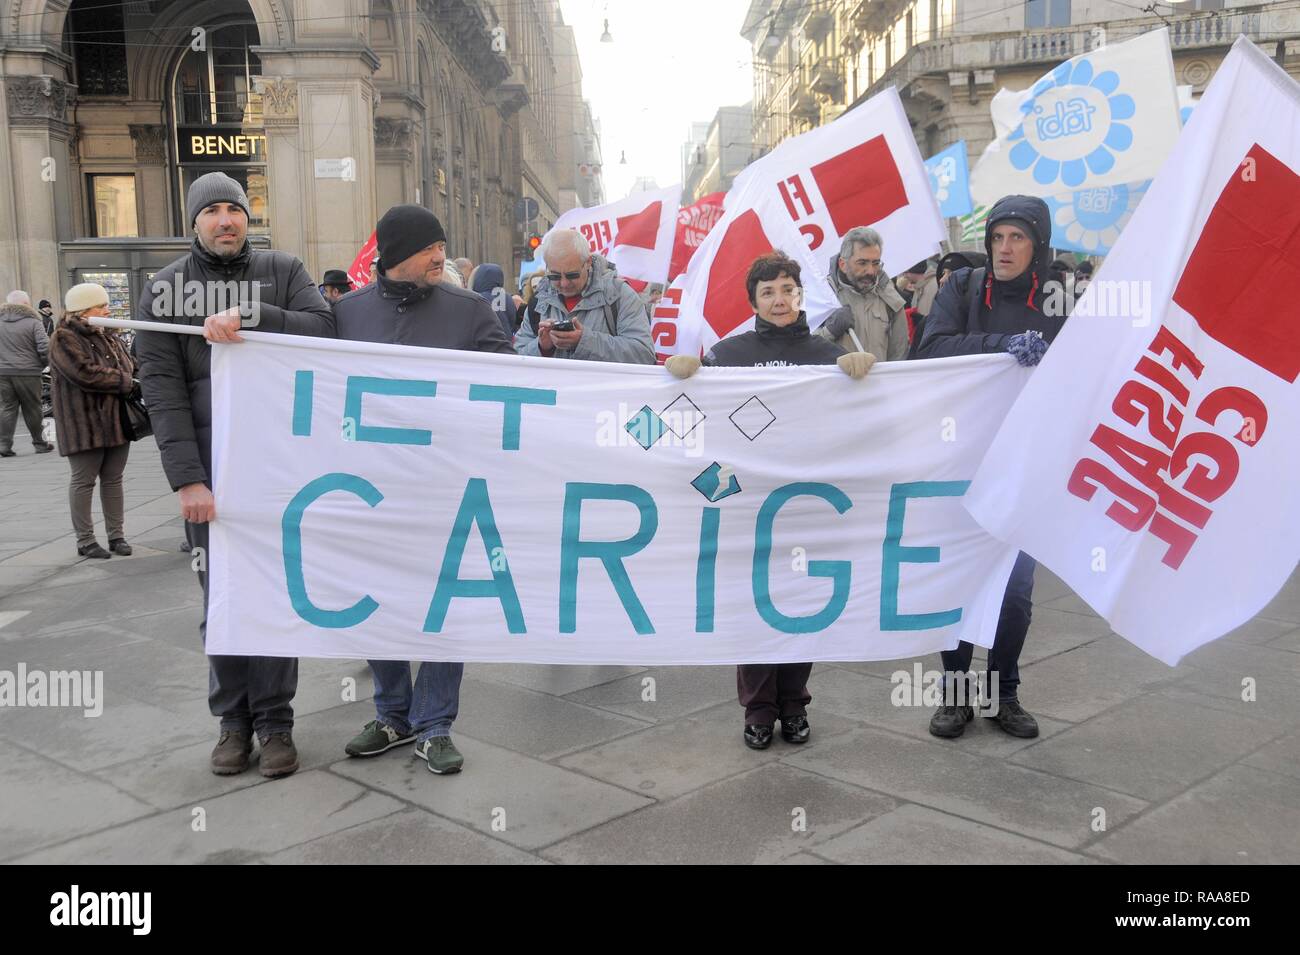 Milan (Italie), de démonstration pour la grève nationale des employés de banque pour le renouvellement du contrat et contre la réduction de l'emploi Banque D'Images